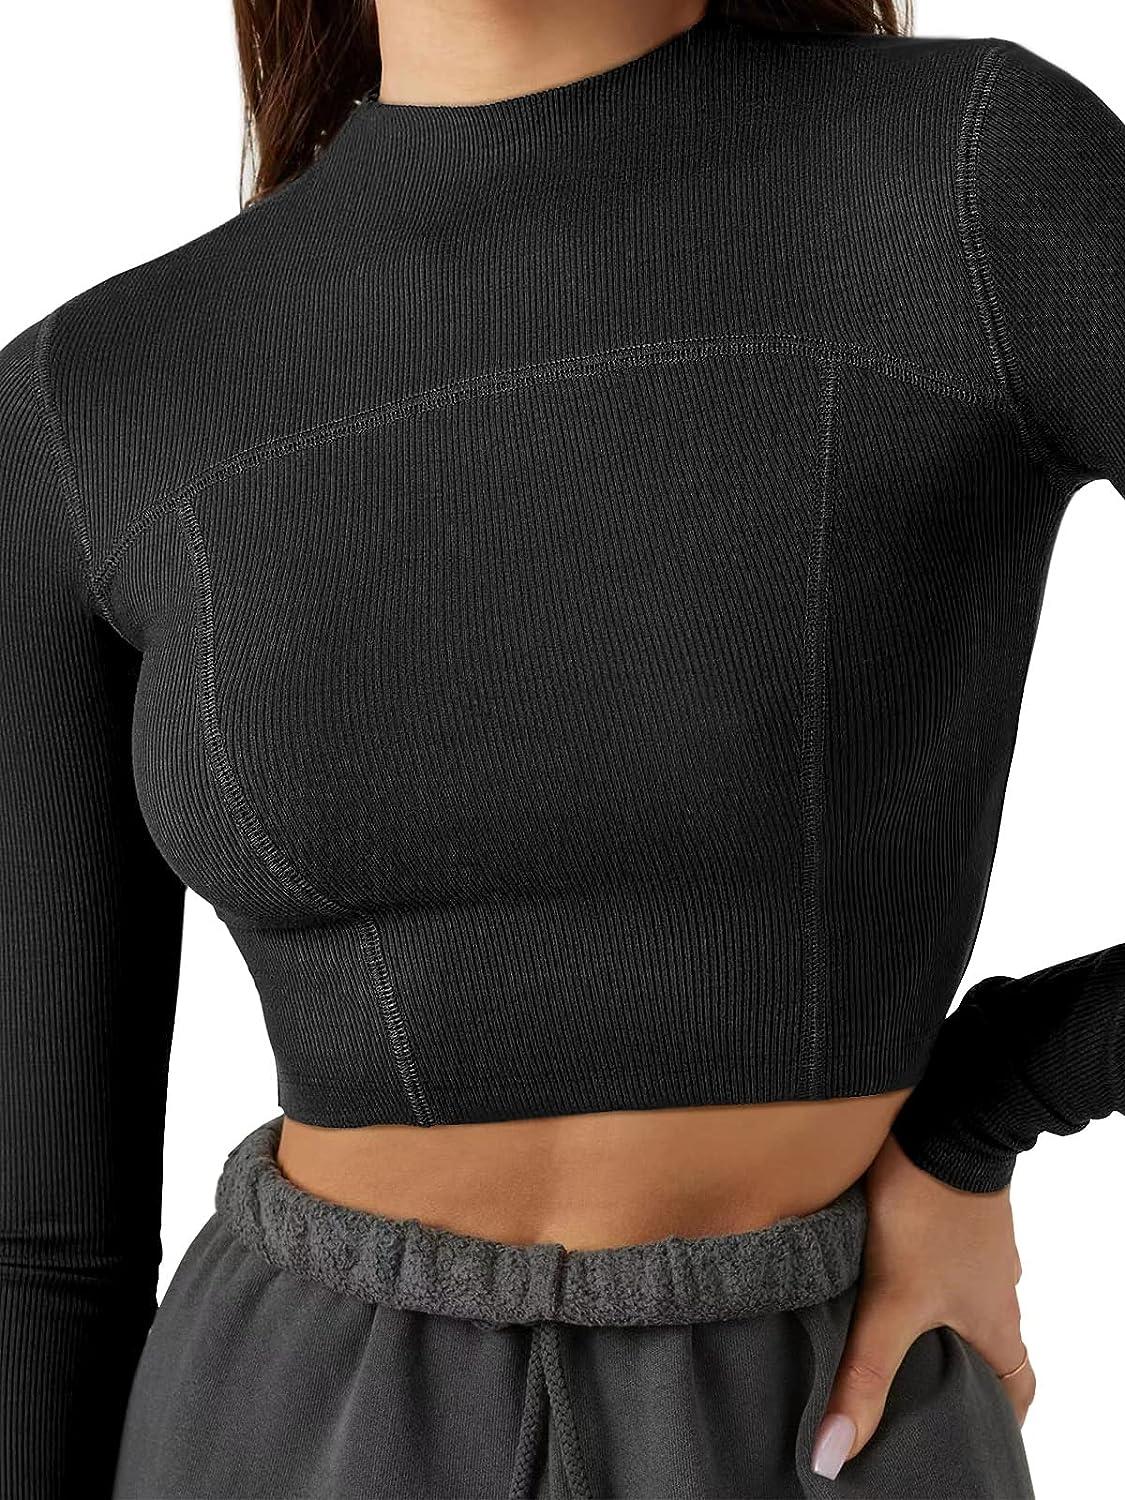 LASLULU Womens Zipper Workout Top Seamless Long Sleeve